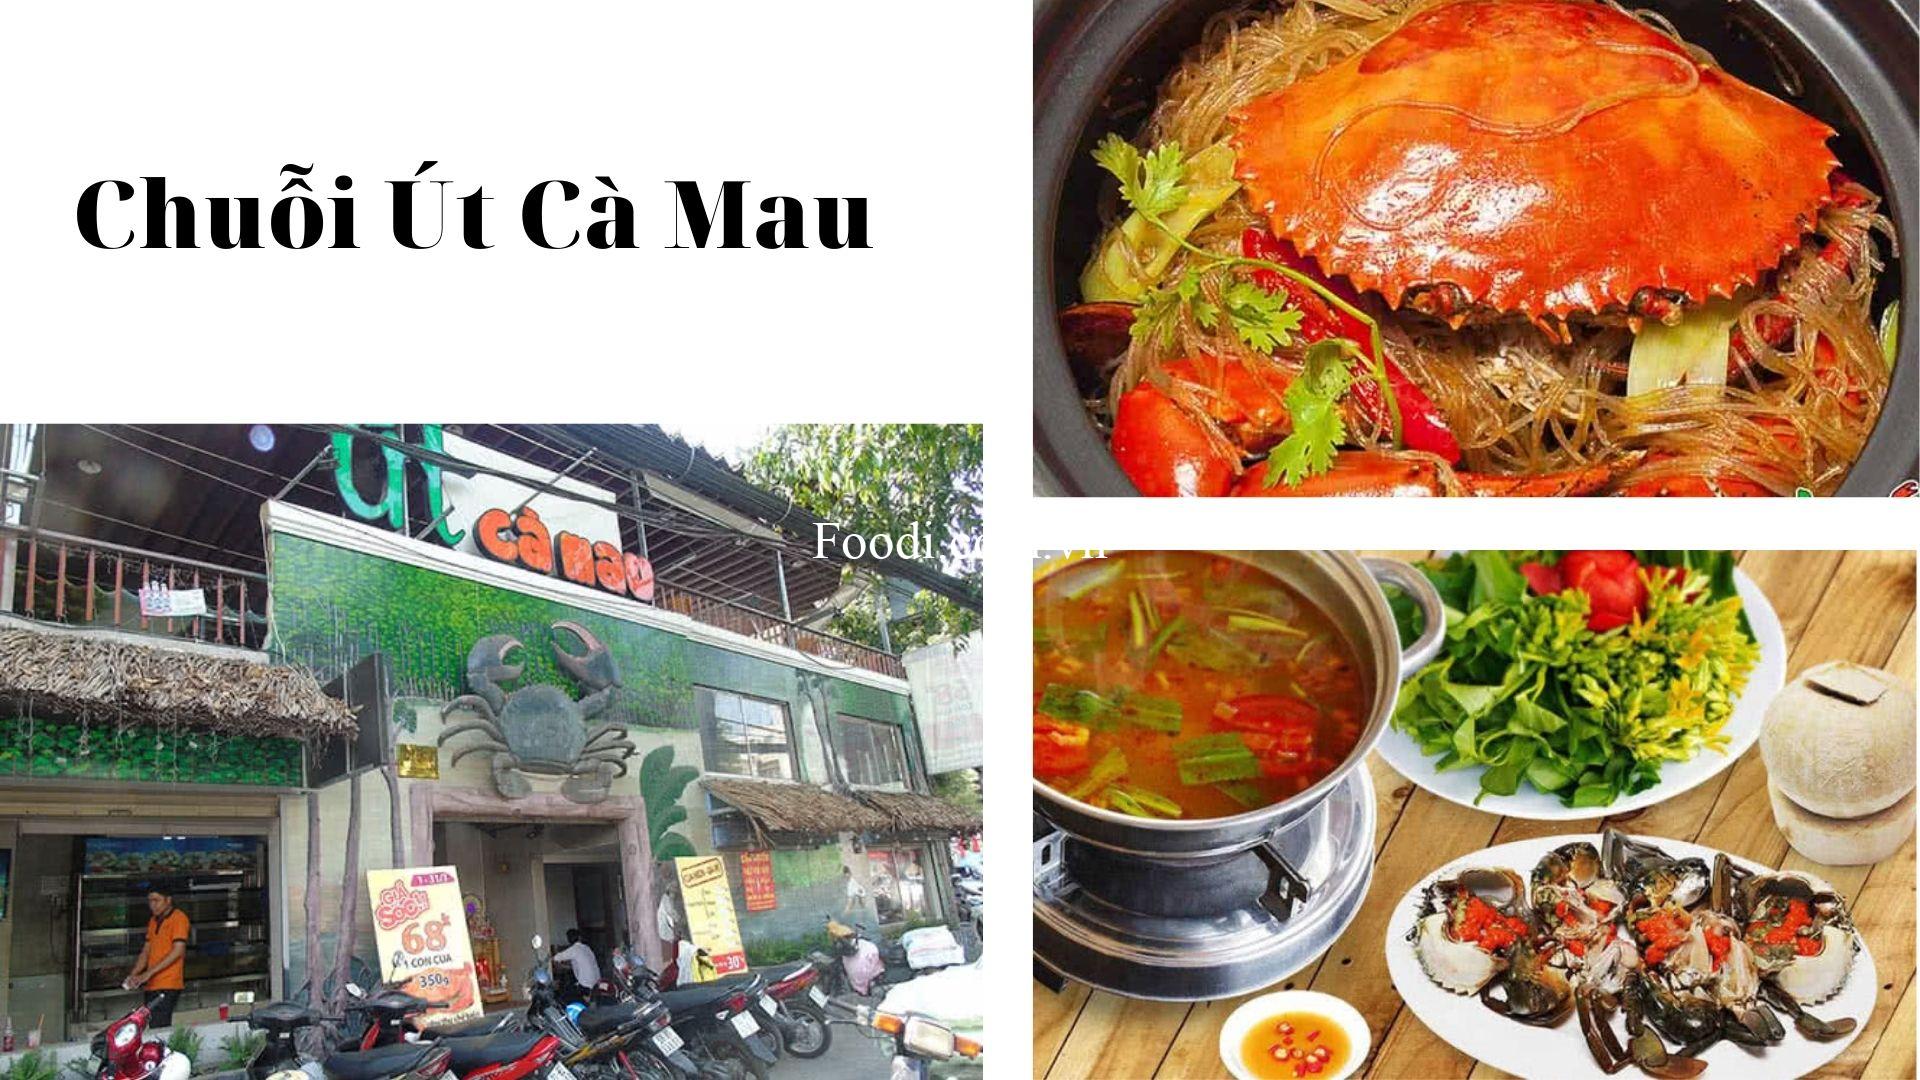 Top 20 Quán nhậu gần đây ngon và luôn khách nhất Sài Gòn TPHCM